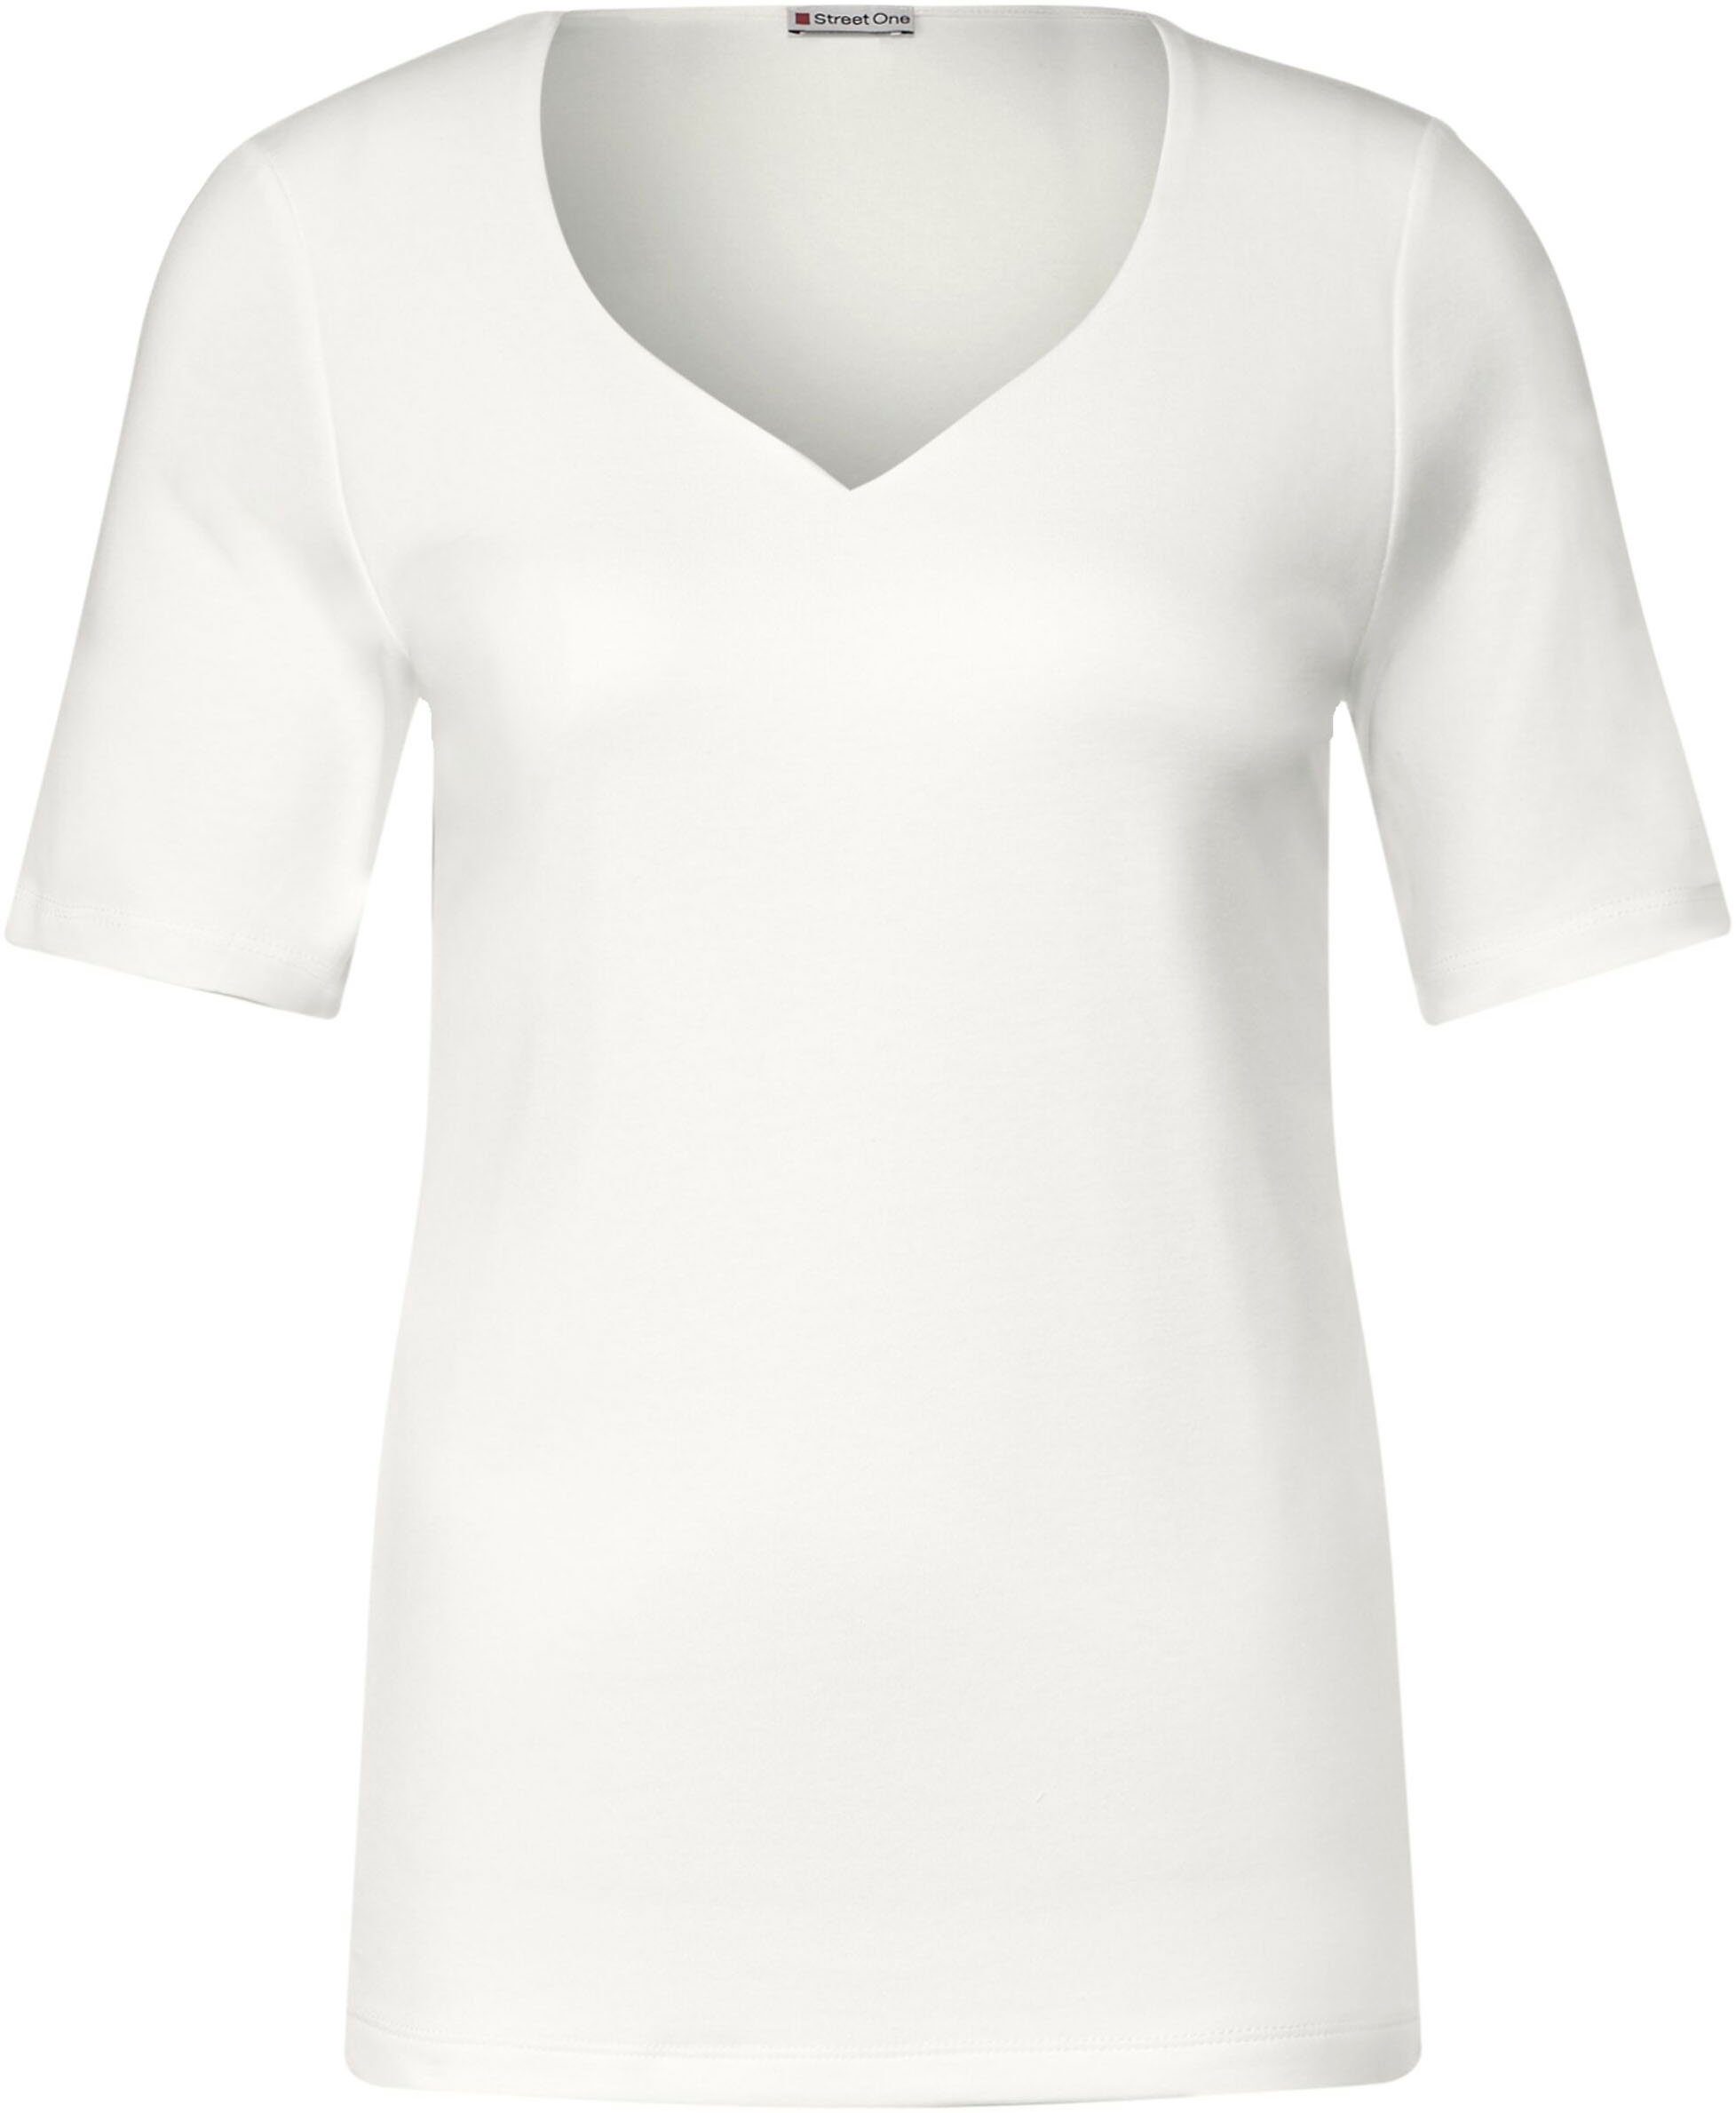 STREET ONE T-Shirt off Herz-Ausschnitt mit white